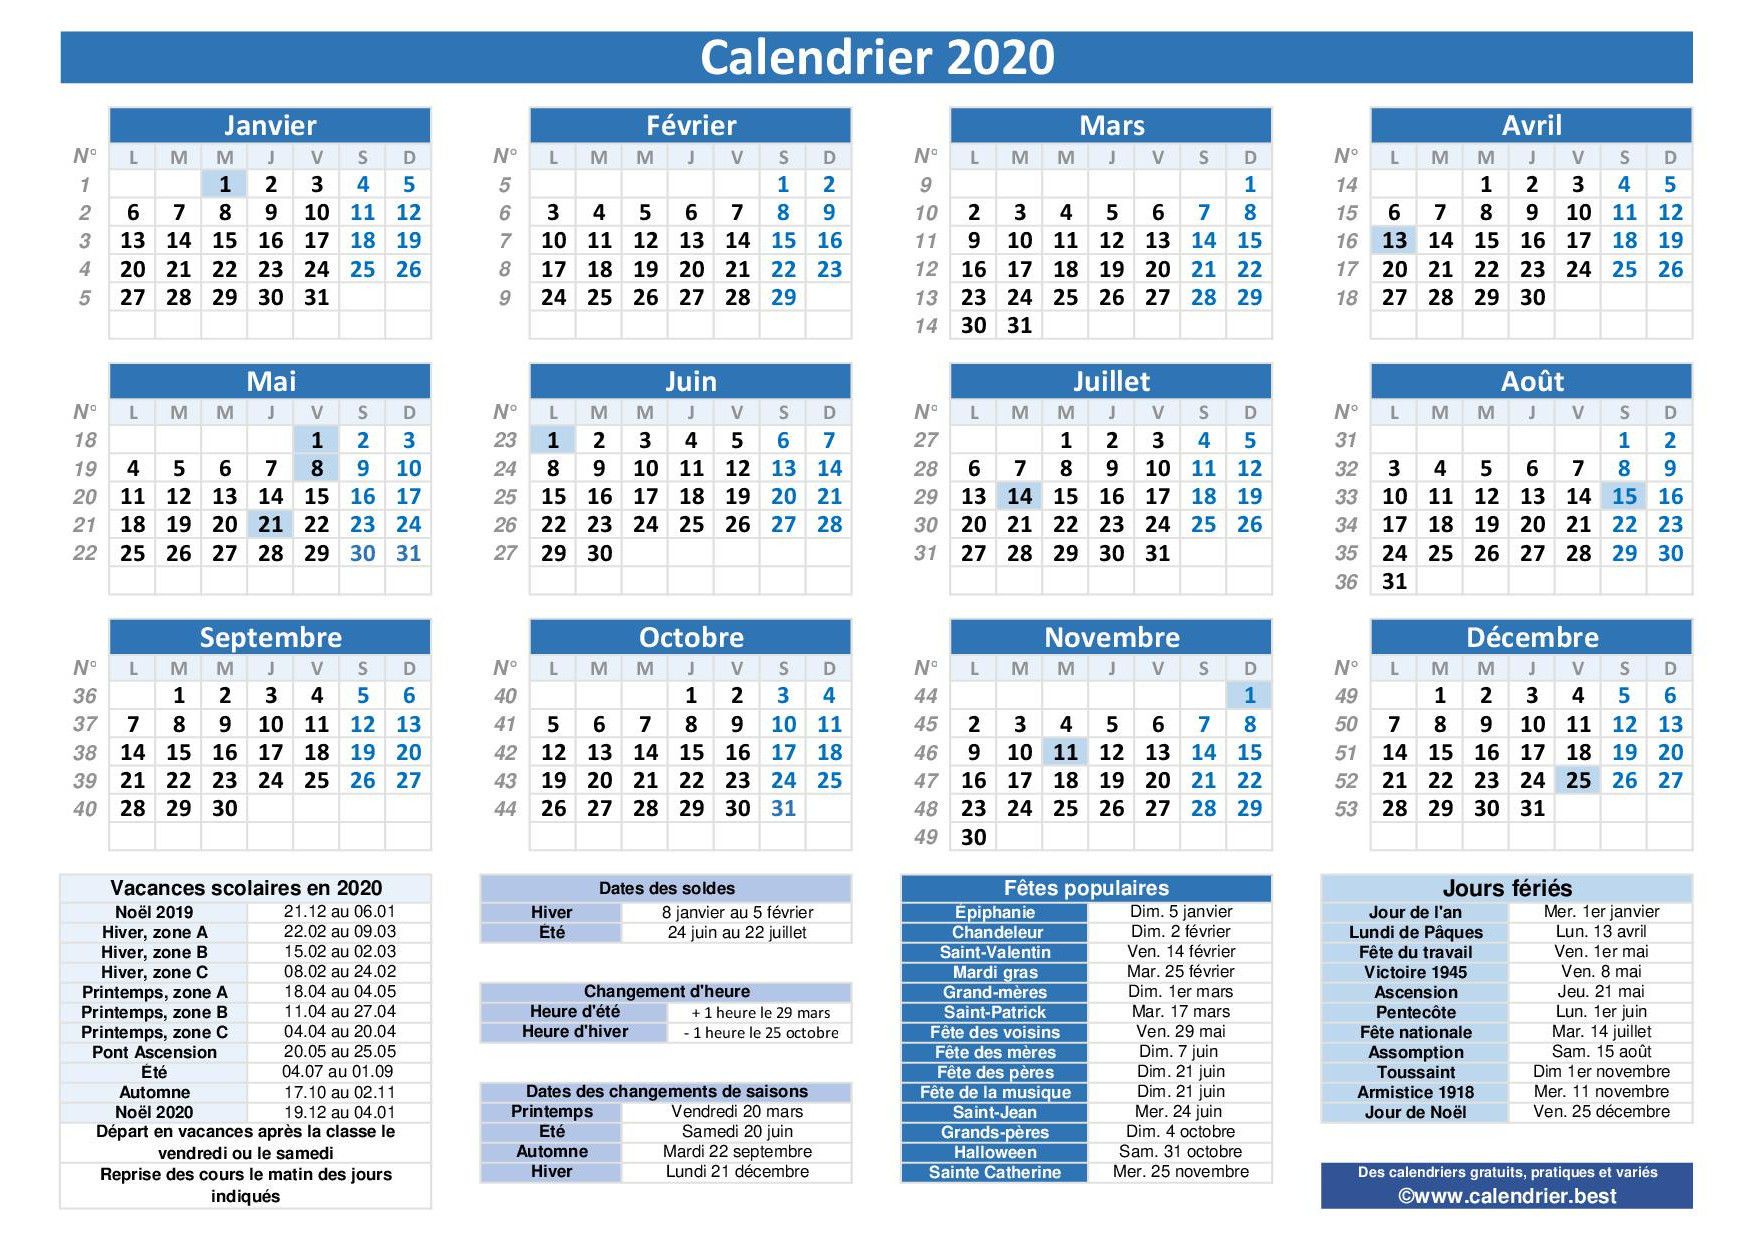 Calendrier 2021 Avec Numero De Semaine Calendrier 2020 avec jours fériés et dates utiles à imprimer 